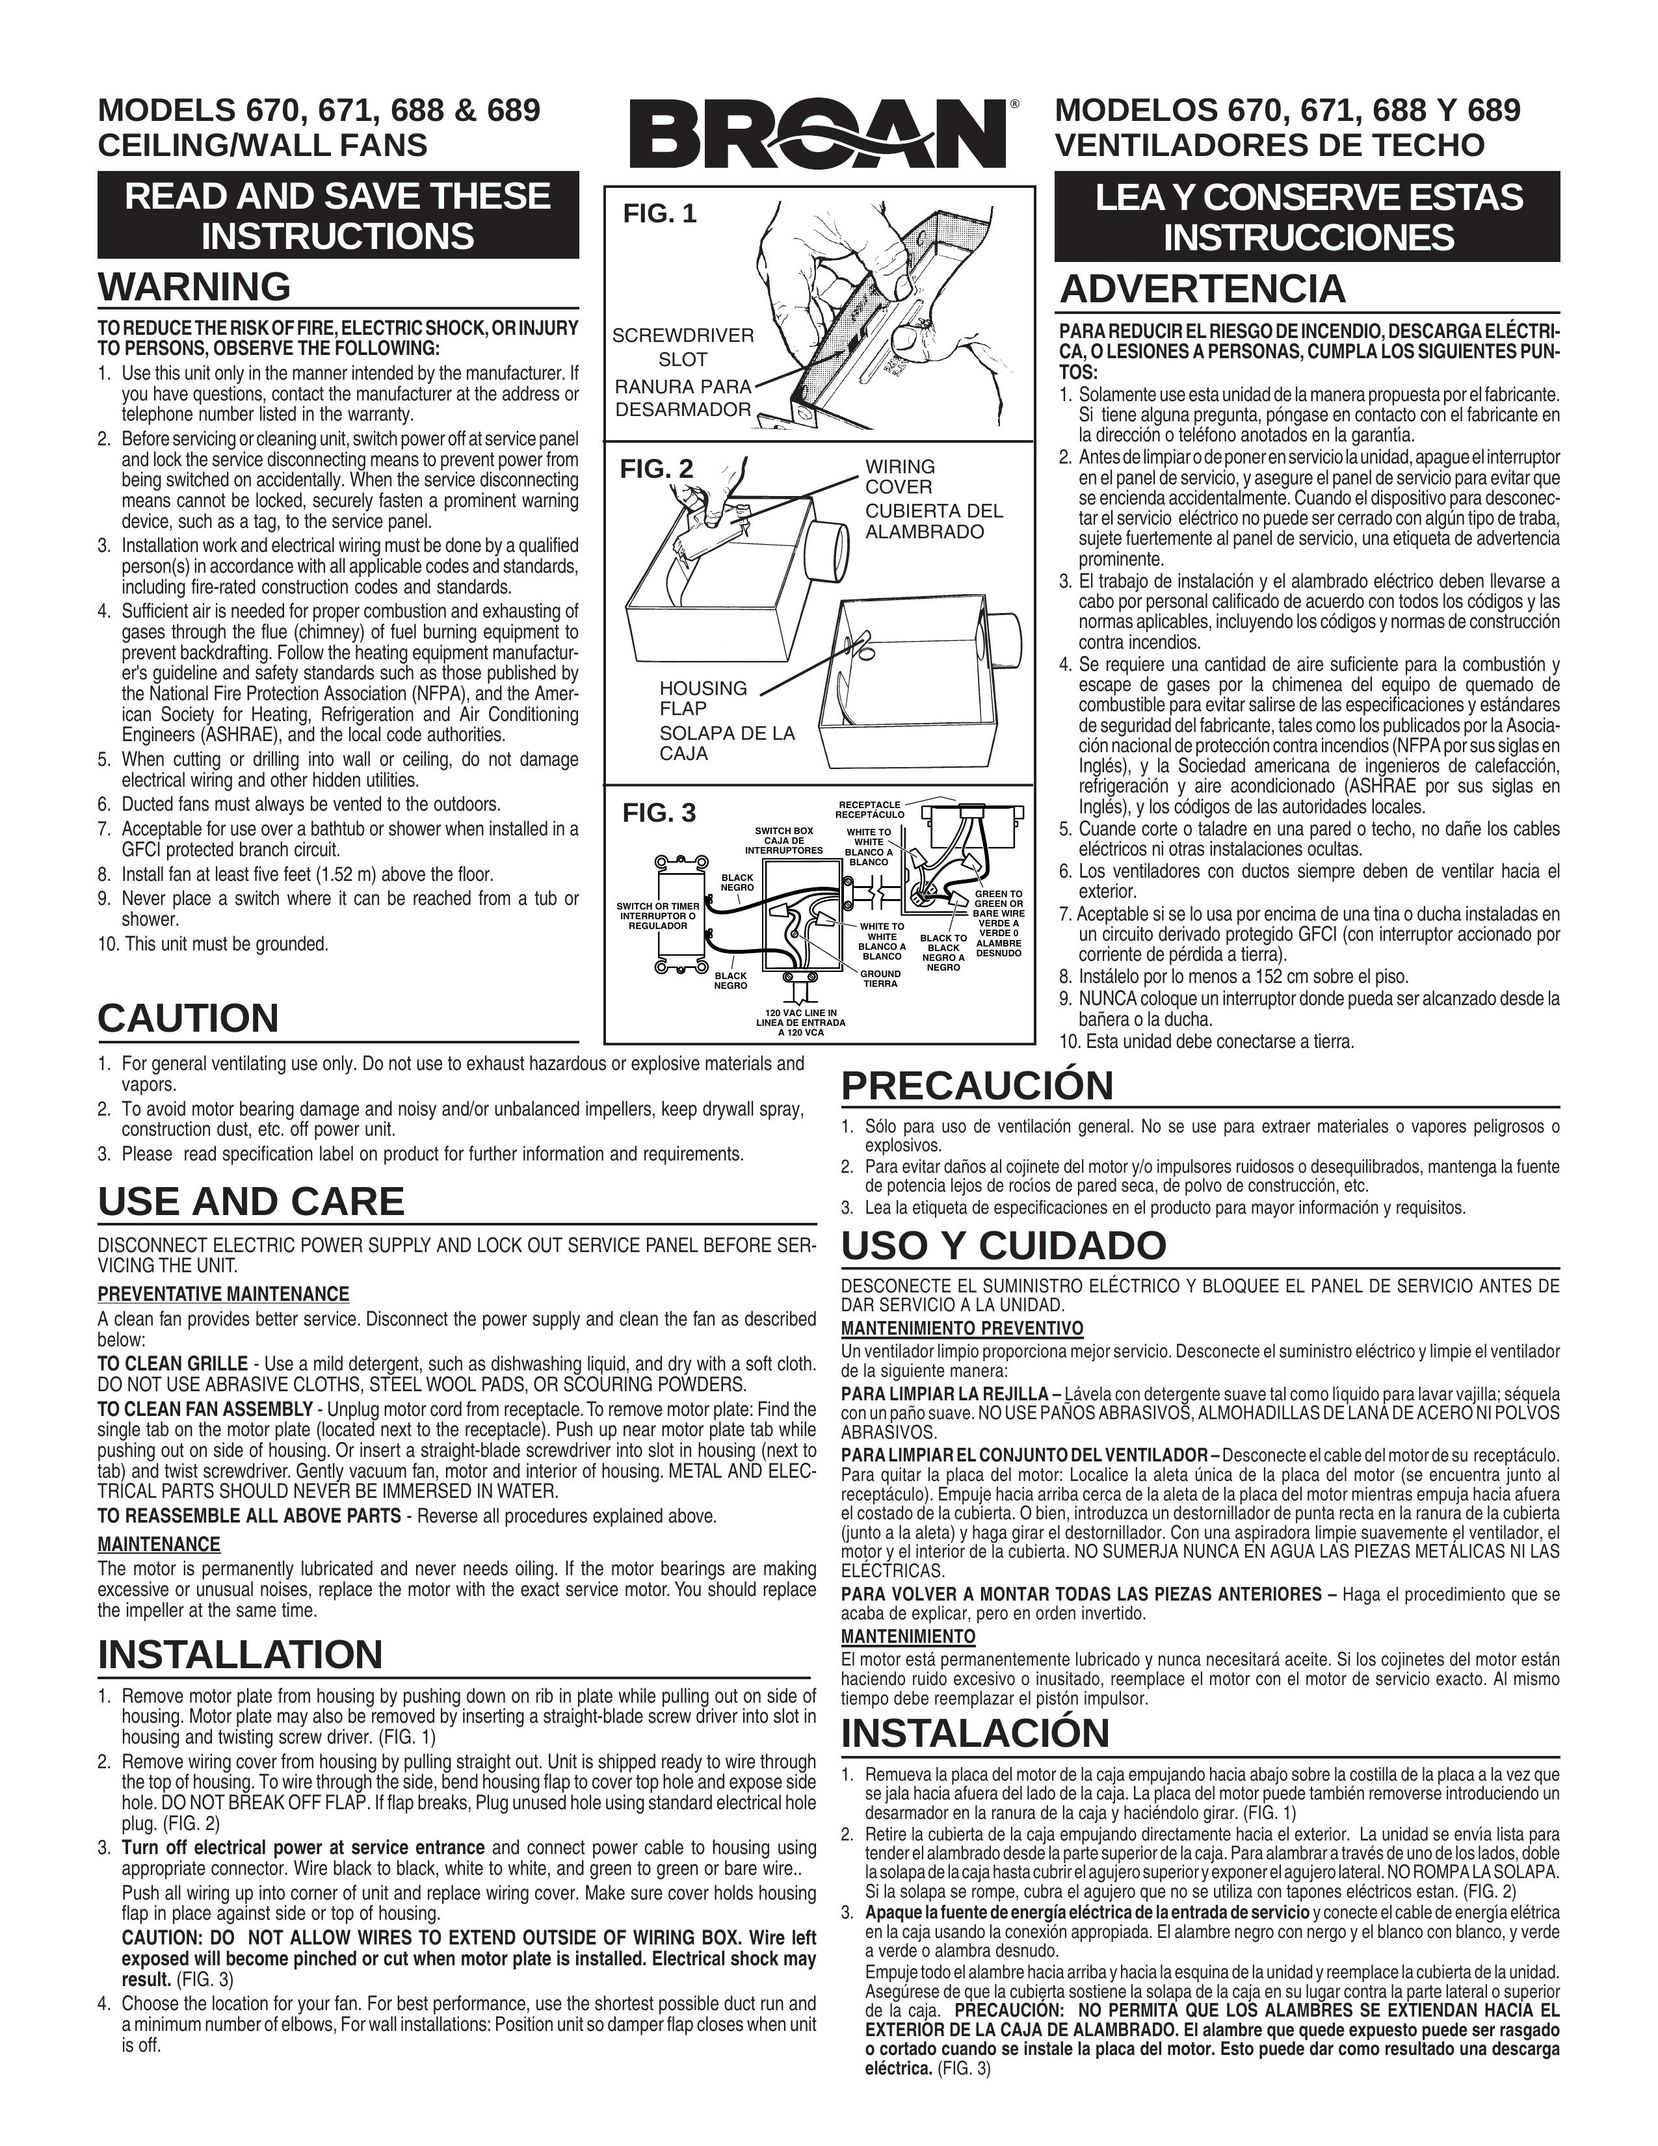 Broan 688 Fan User Manual